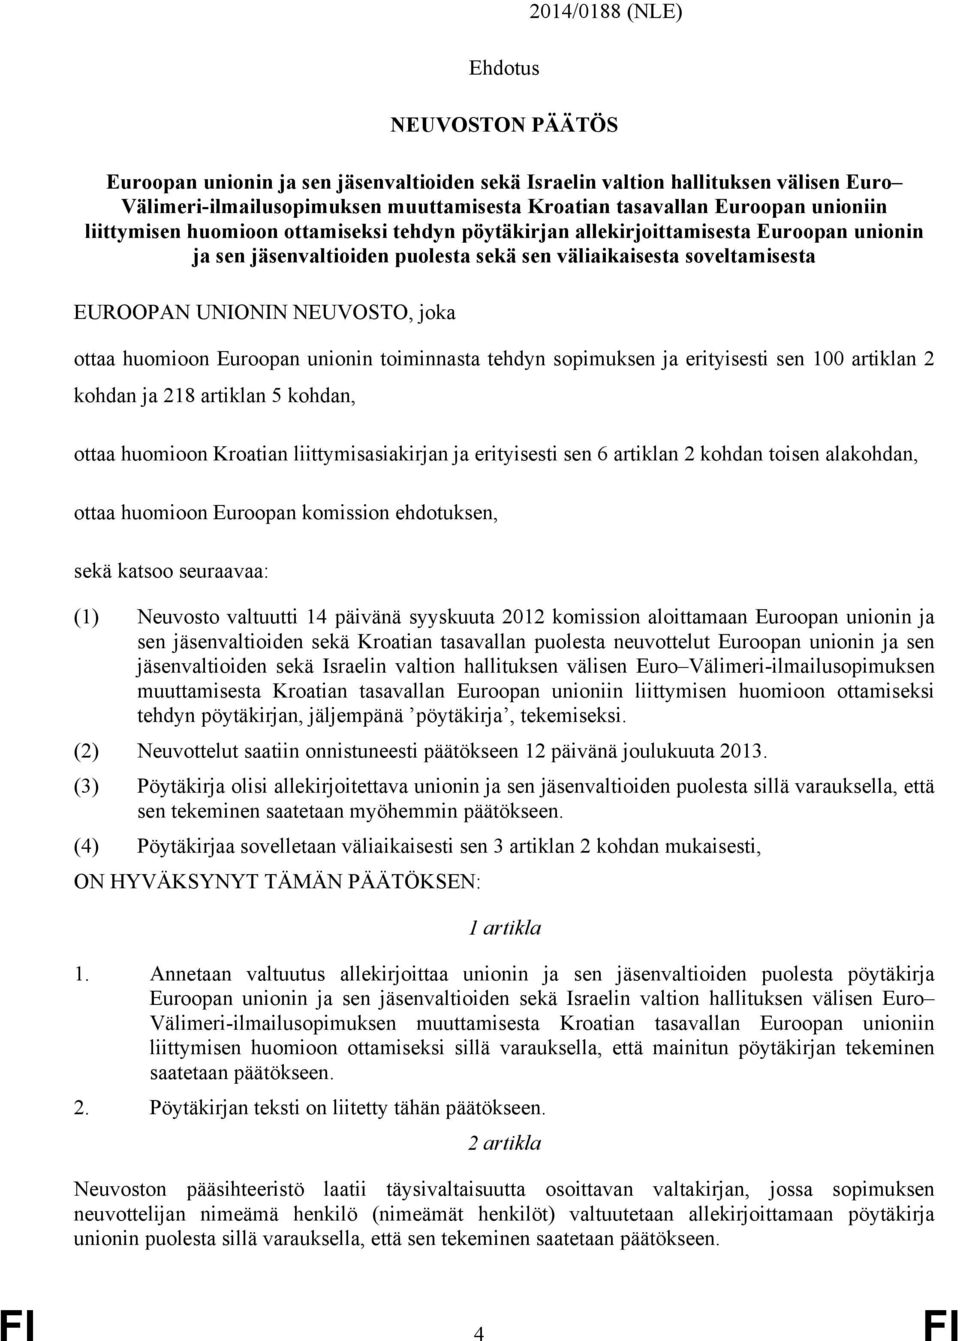 liittymisasiakirjan ja erityisesti sen 6 artiklan 2 kohdan toisen alakohdan, ottaa huomioon Euroopan komission ehdotuksen, sekä katsoo seuraavaa: (1) Neuvosto valtuutti 14 päivänä syyskuuta 2012